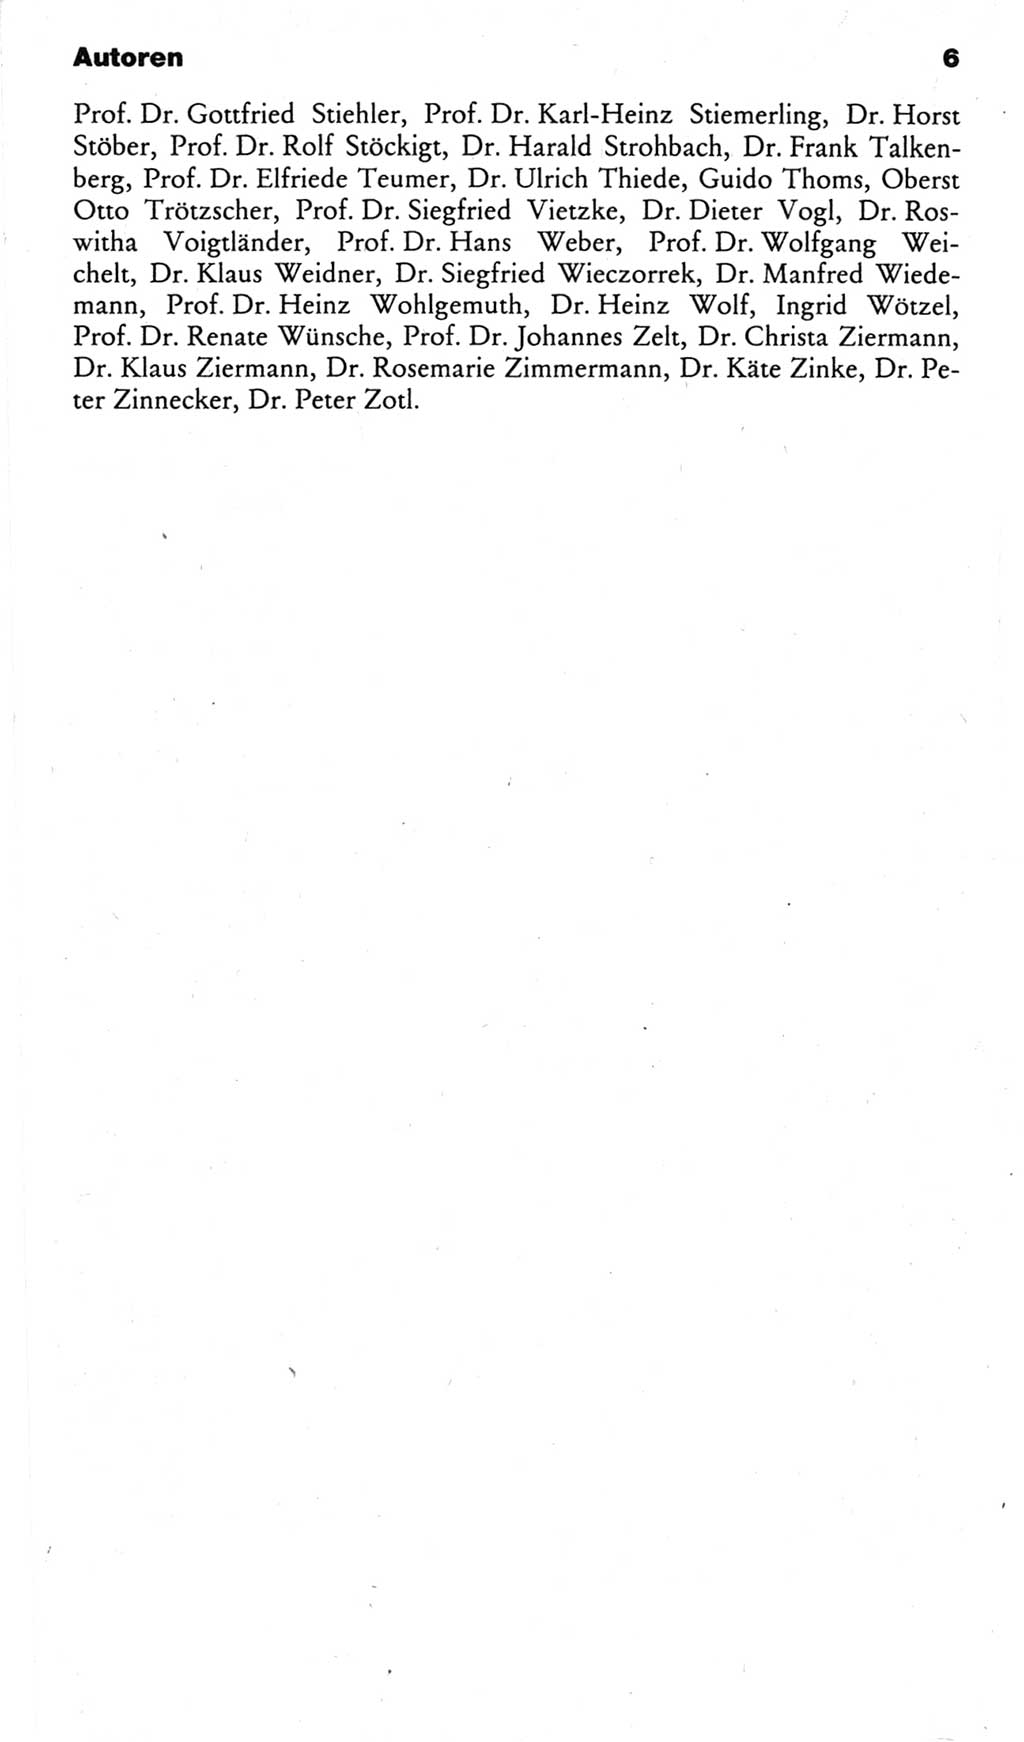 Kleines politisches Wörterbuch [Deutsche Demokratische Republik (DDR)] 1983, Seite 6 (Kl. pol. Wb. DDR 1983, S. 6)